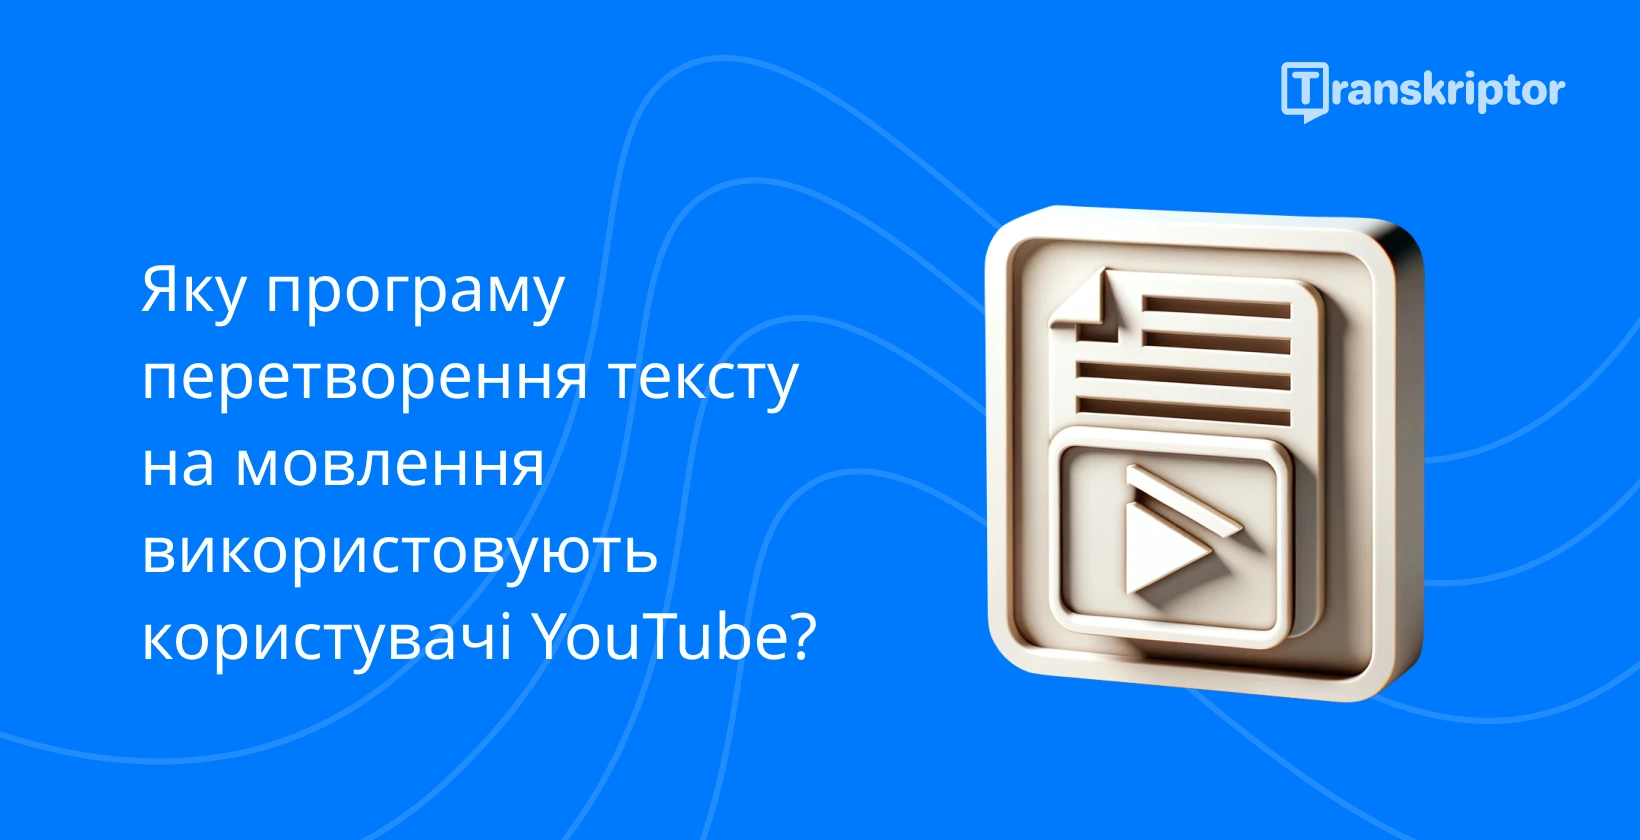 Використання тексту в мовлення користувачами YouTube відображається за допомогою кнопки відтворення та значка документа.